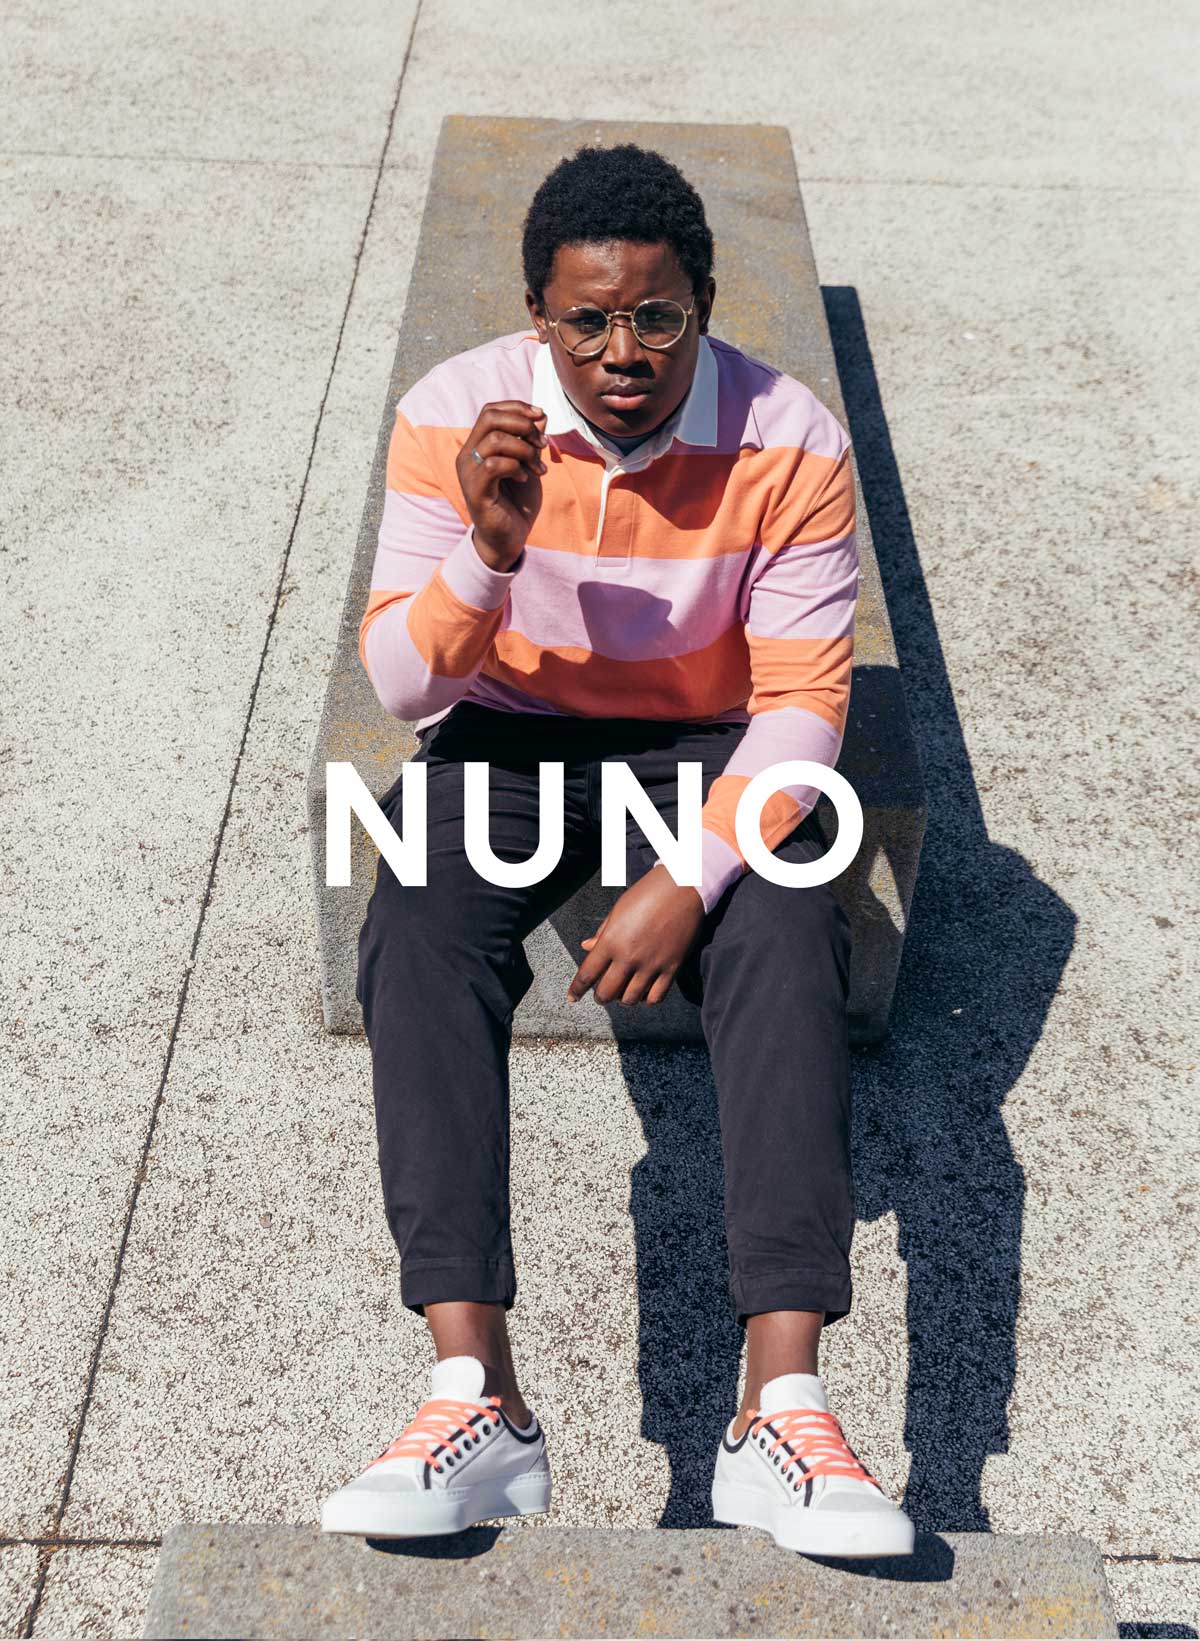 Nuno Er sitzt an einer Wand und trägt sneakers Von Diverge, die durch das IMAGINE-Projekt eine soziale Wirkung erzielt.